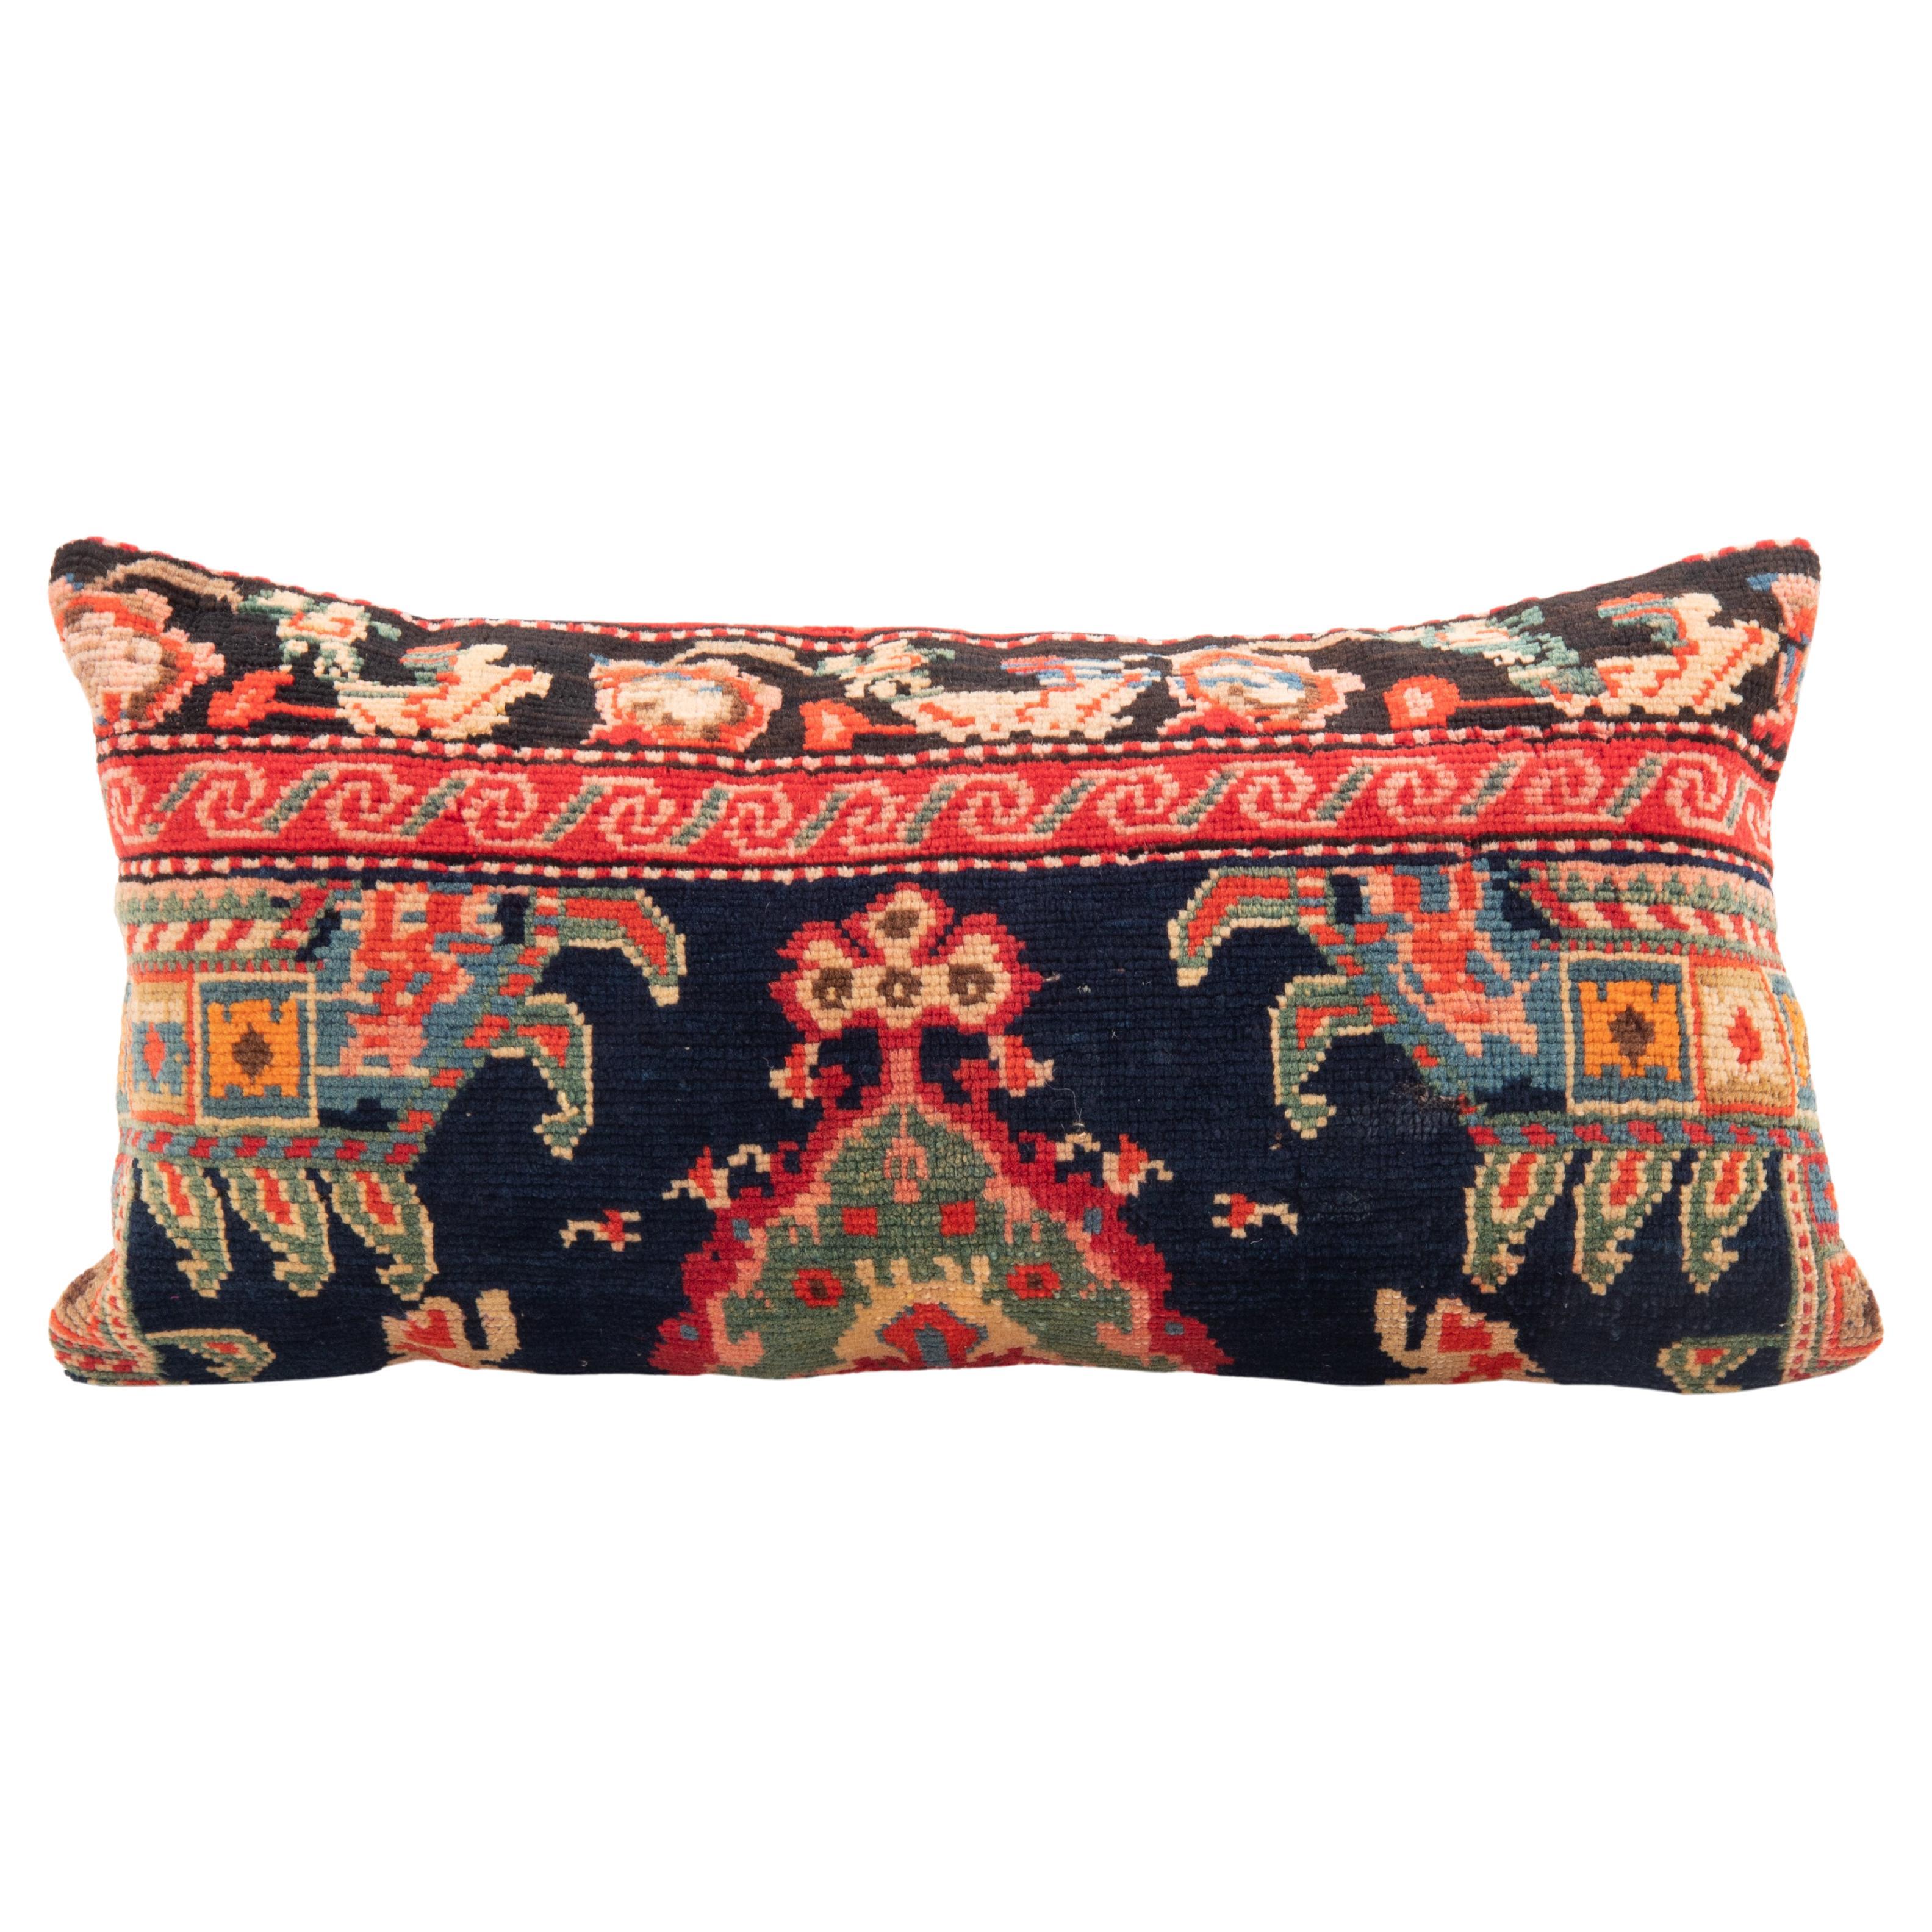 Couvercle d'oreiller fabriqué à partir d'un tapis caucasien Karabagh, fin du 19e / début du 20e siècle